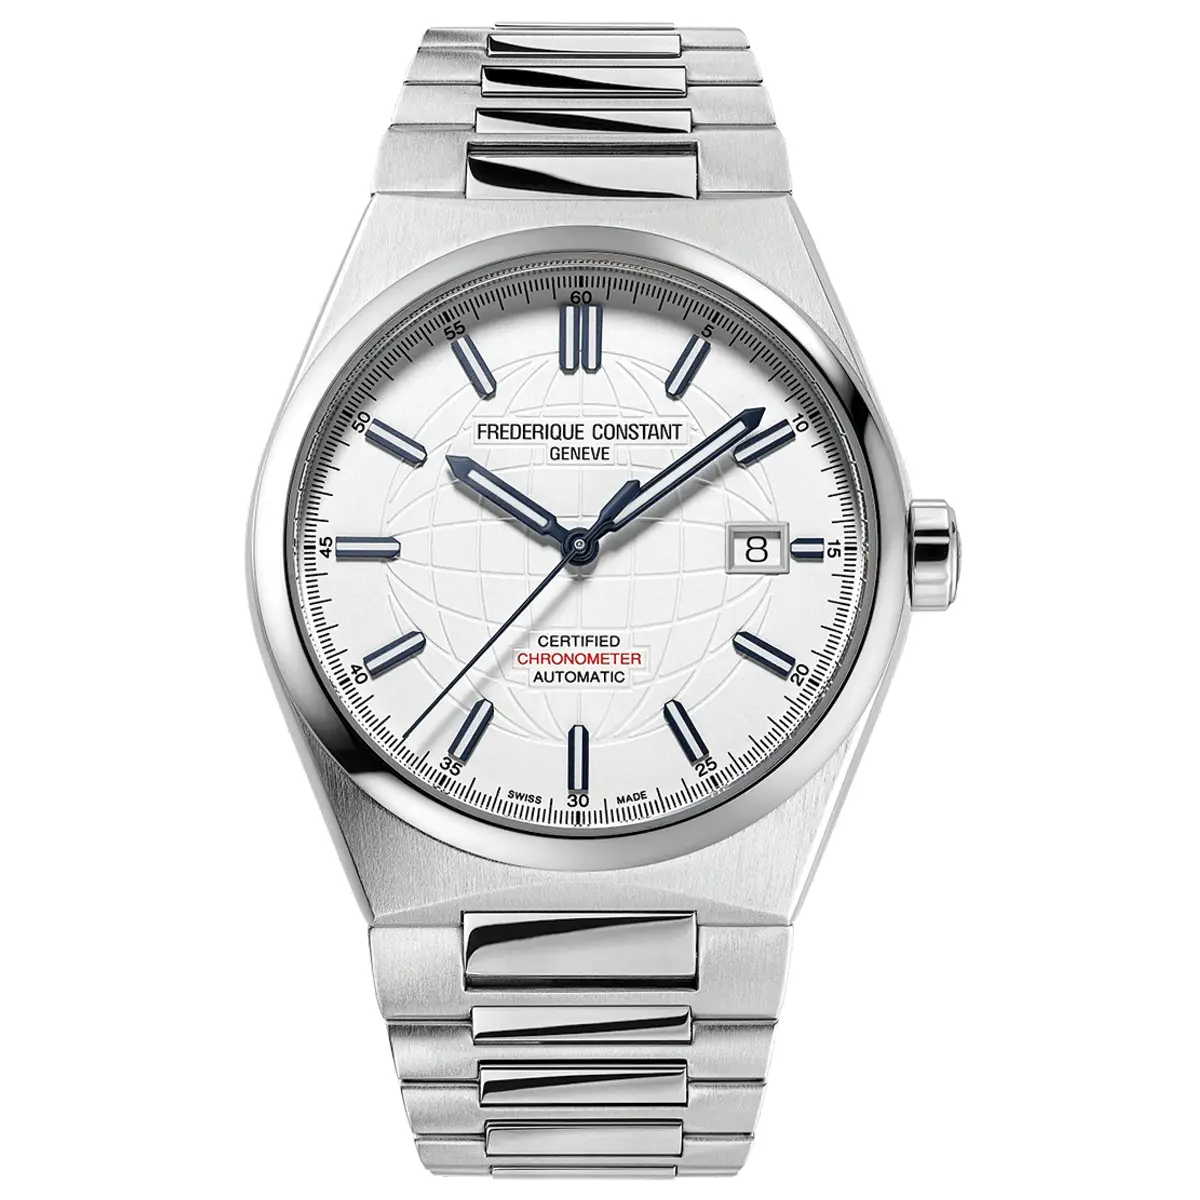 Đồng hồ Frederique Constant Highlife COSC Automatic FC-303S3NH26B (FC303S3NH26B) mặt số màu bạc. Dây đeo bằng thép. Thân vỏ bằng thép.